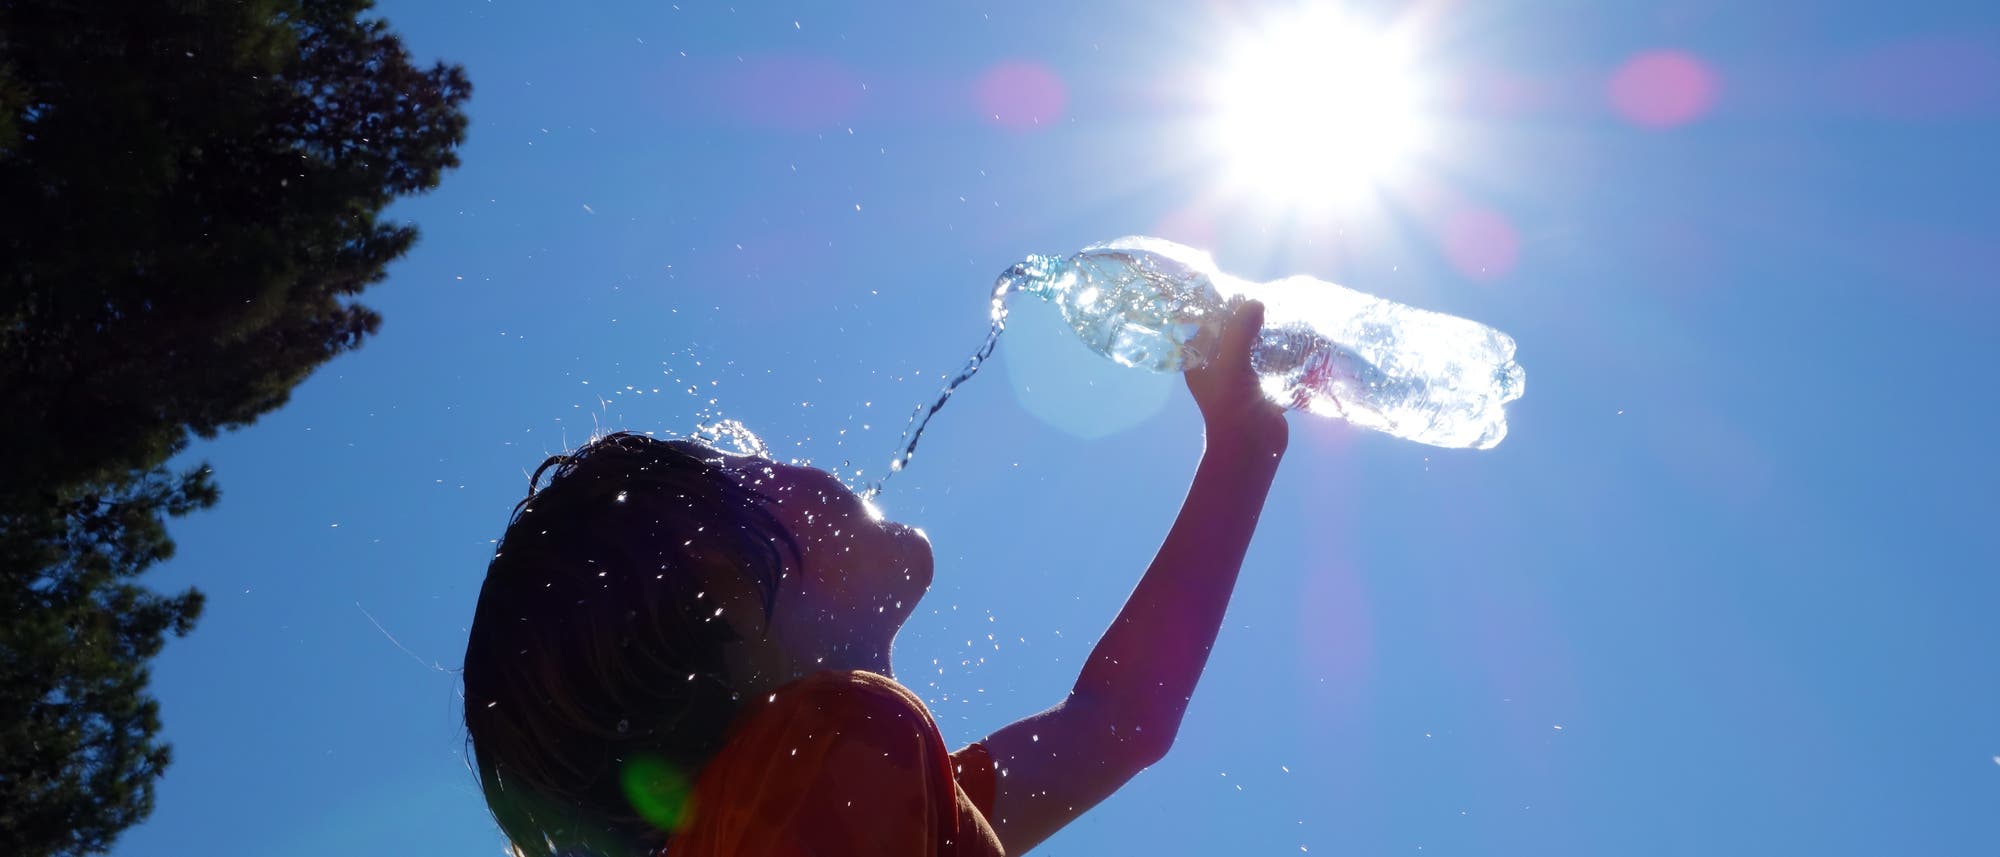 Ein Kind gießt zur Abkühlung Wasser auf sich selbst